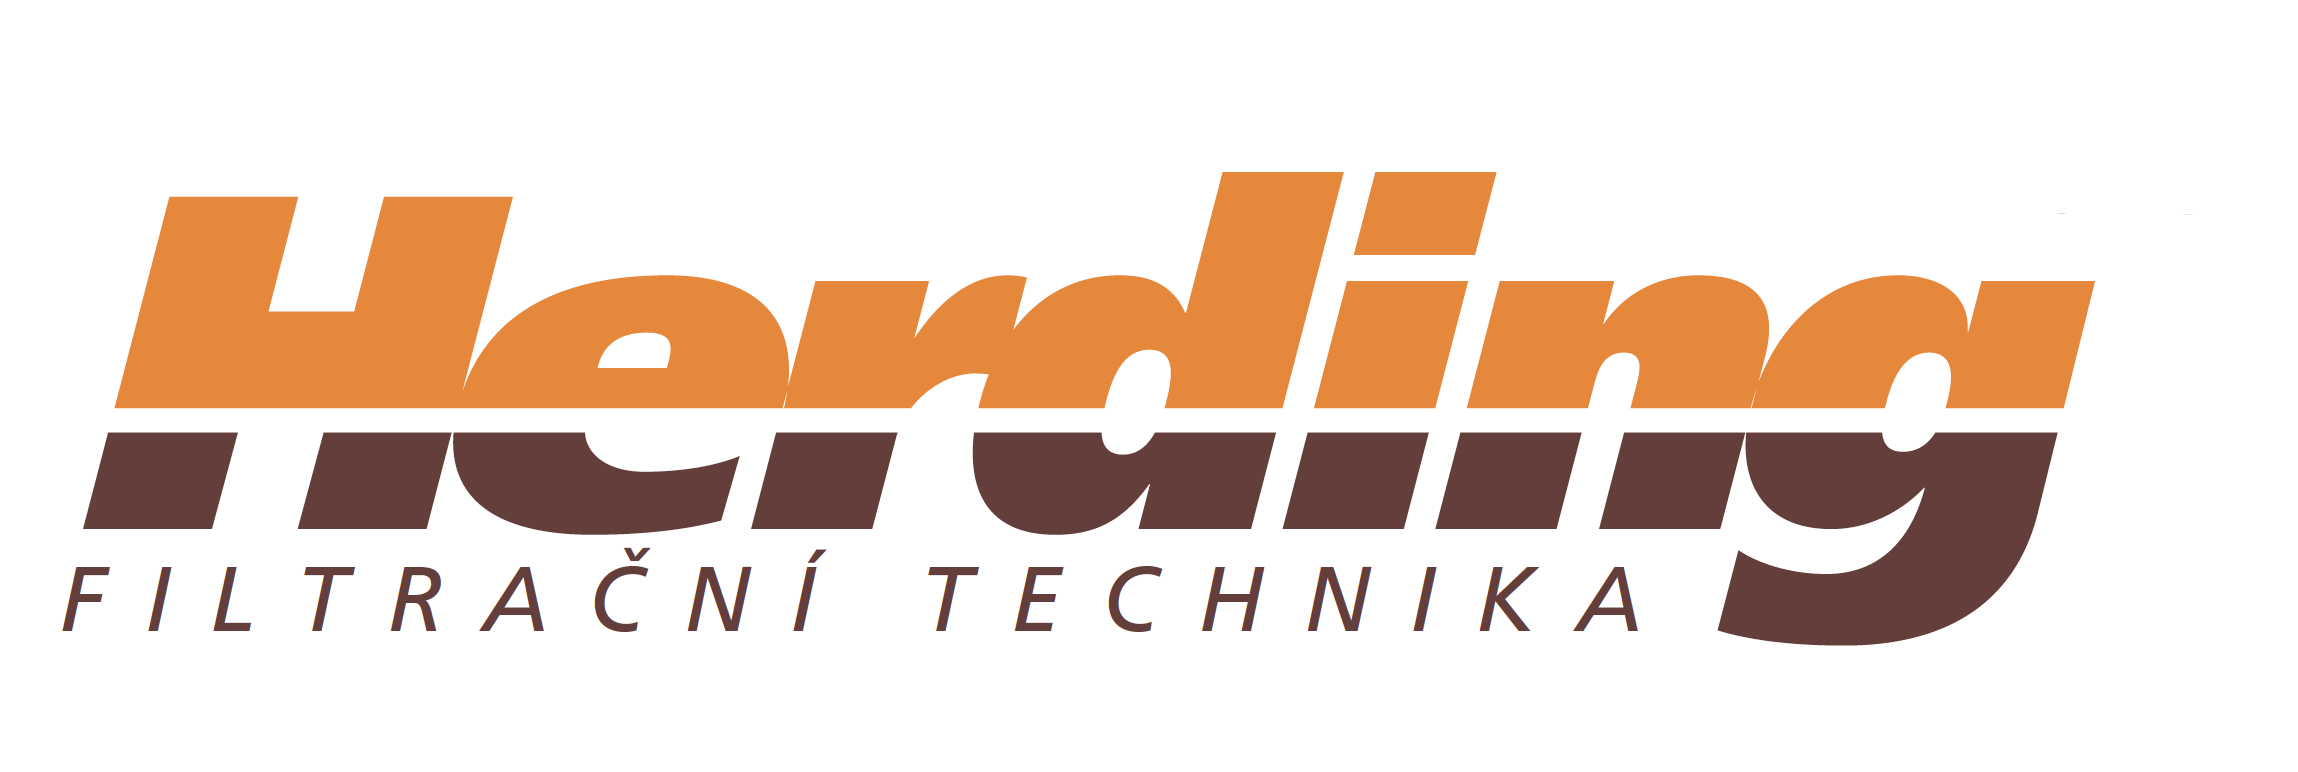 Herding_logo